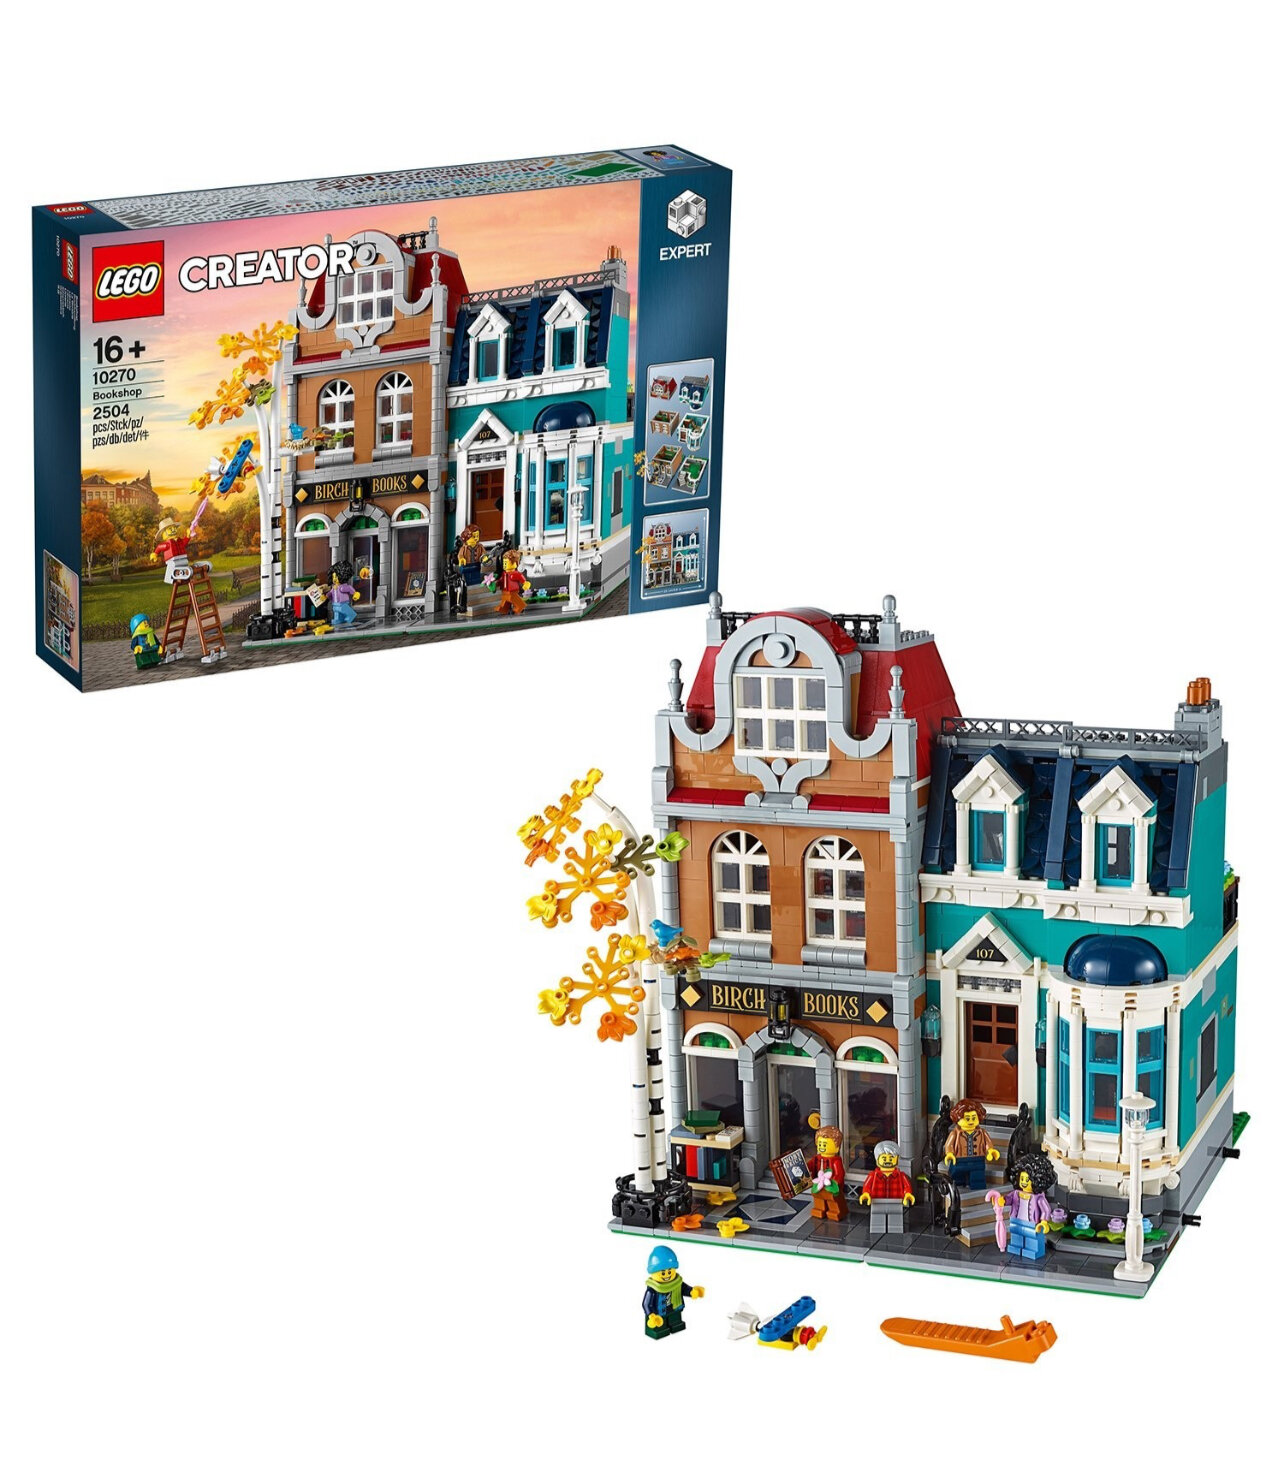 Конструктор LEGO Creator 10270 Книжный магазин, 2504 дет.